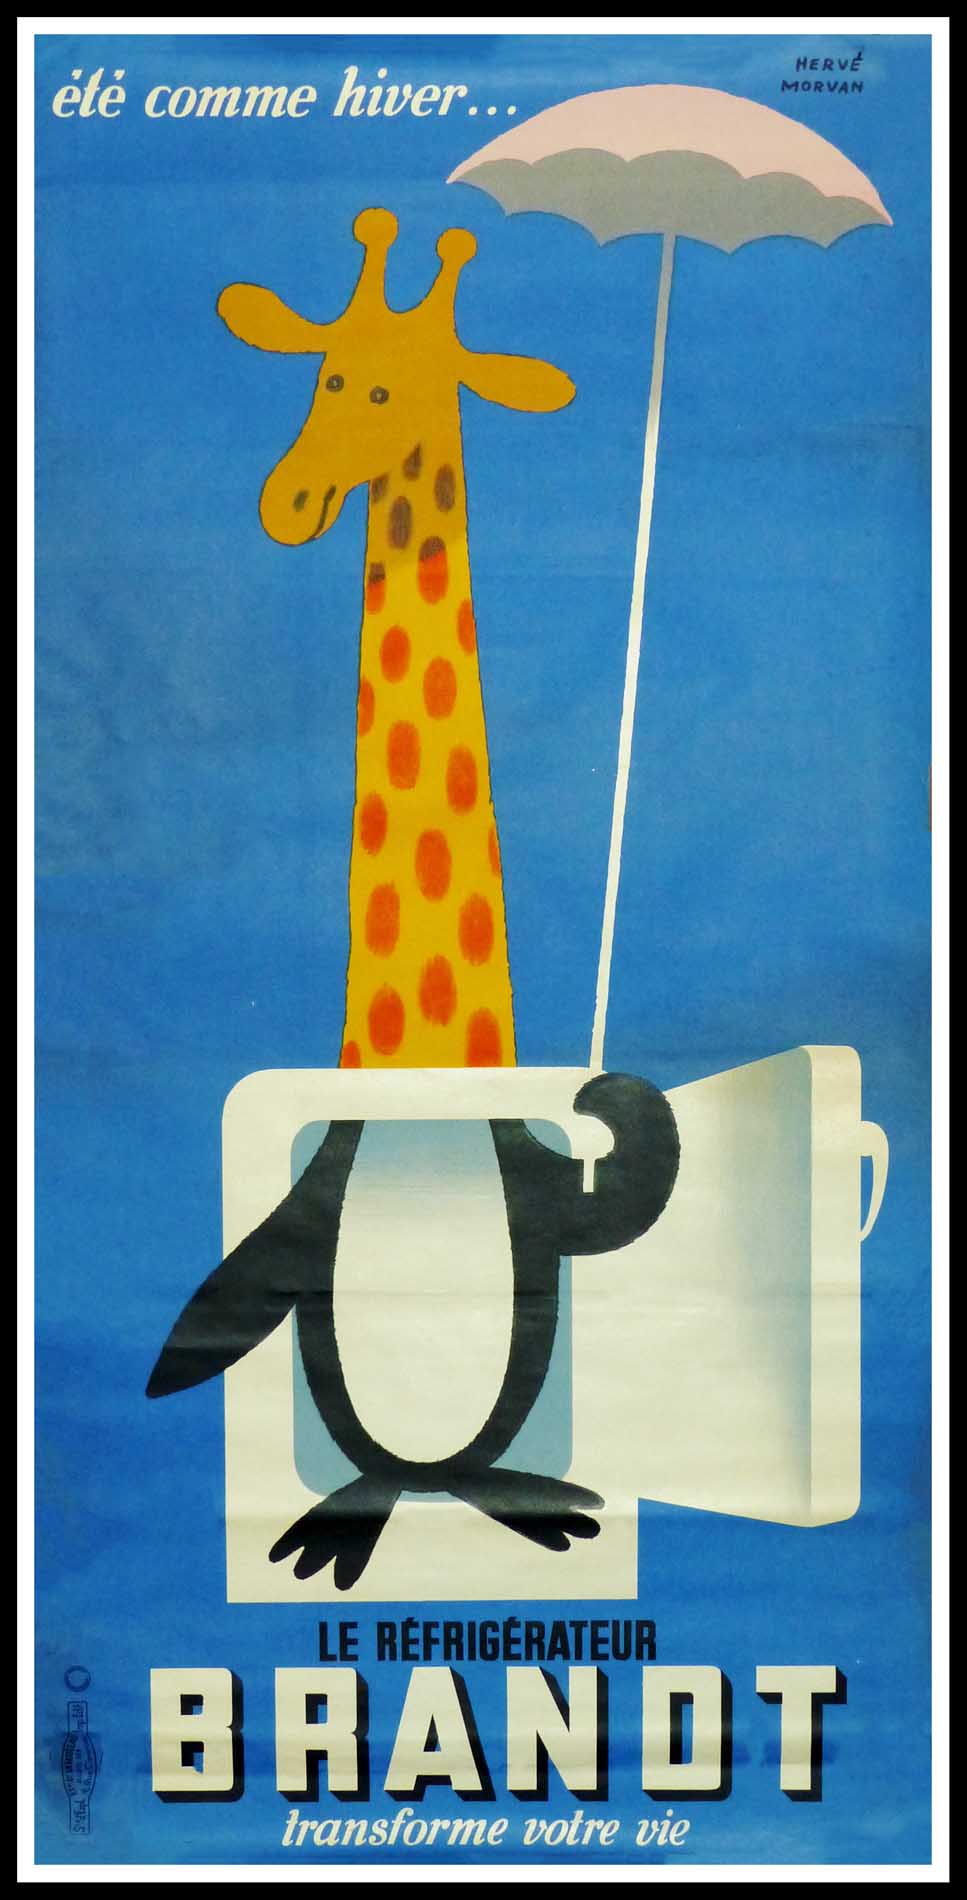 (alt="original vintage advertising poster, Hervé MORVAN, Brand la girafe, signed in the plate 1955")